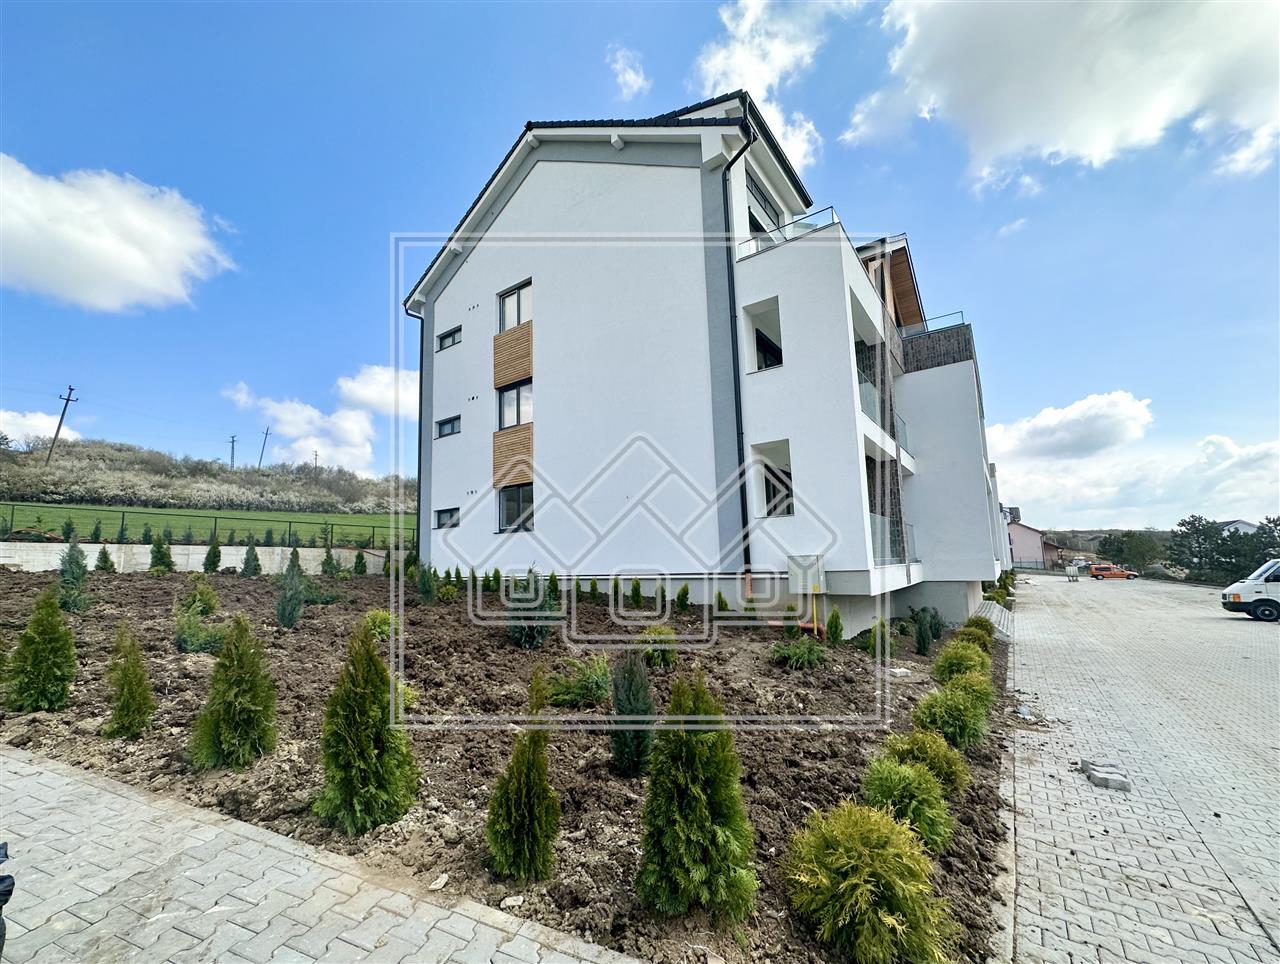 Apartament 2 rooms for sale in Sibiu-54.14 sqm - 6.97 sqm loggia